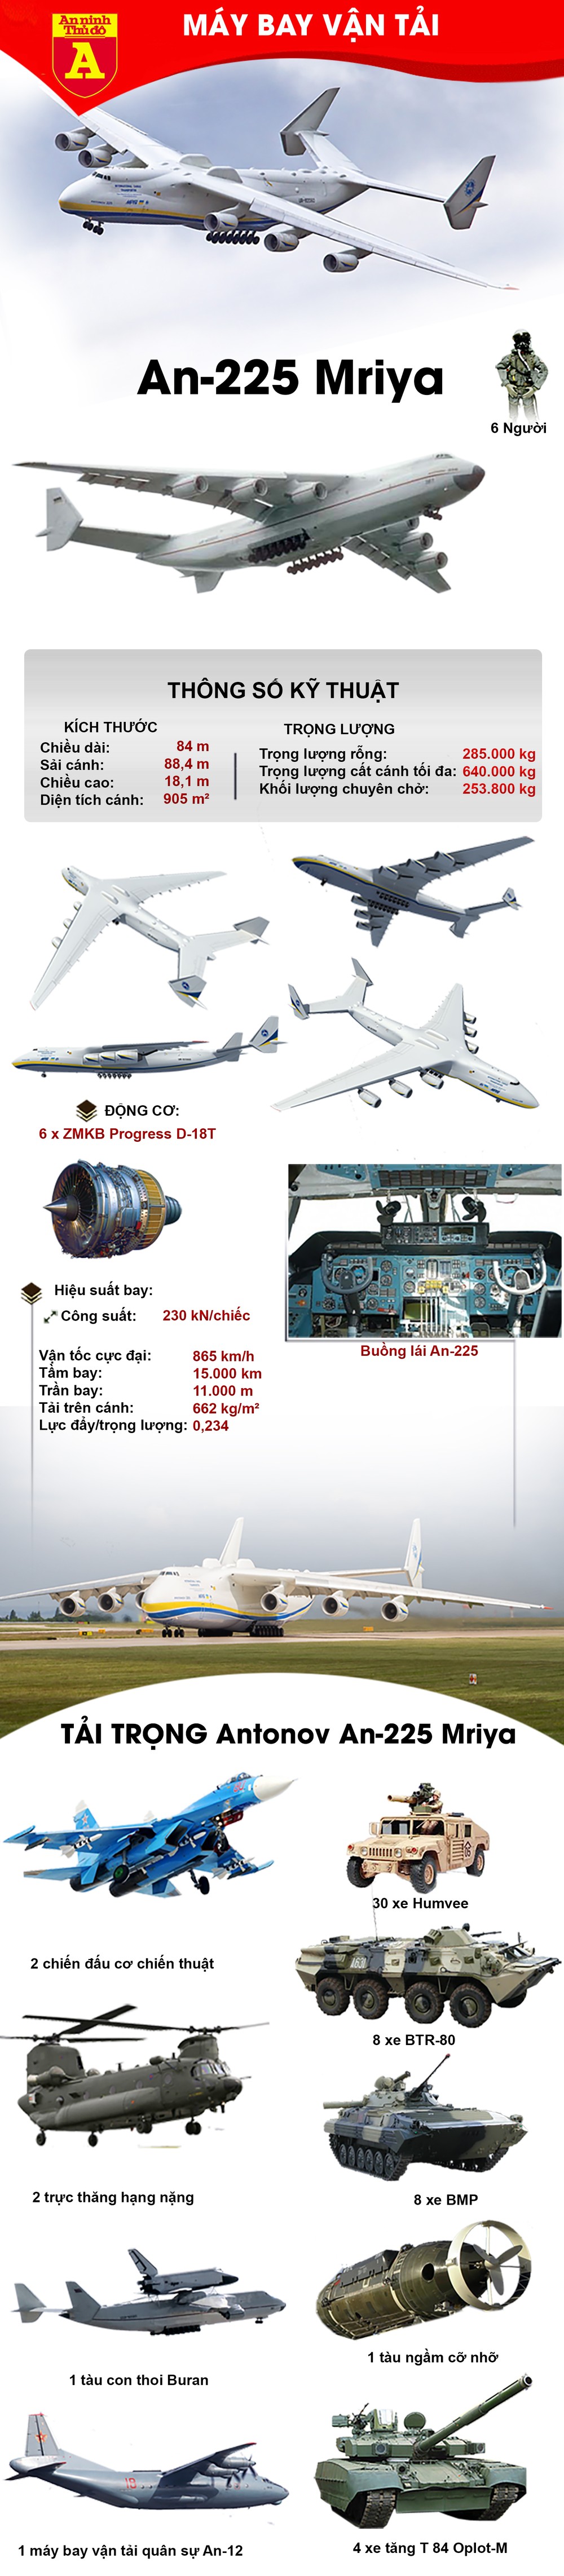 [Info] Kỳ quan công nghệ Liên Xô với siêu máy bay vận tải nặng 640 tấn ảnh 2